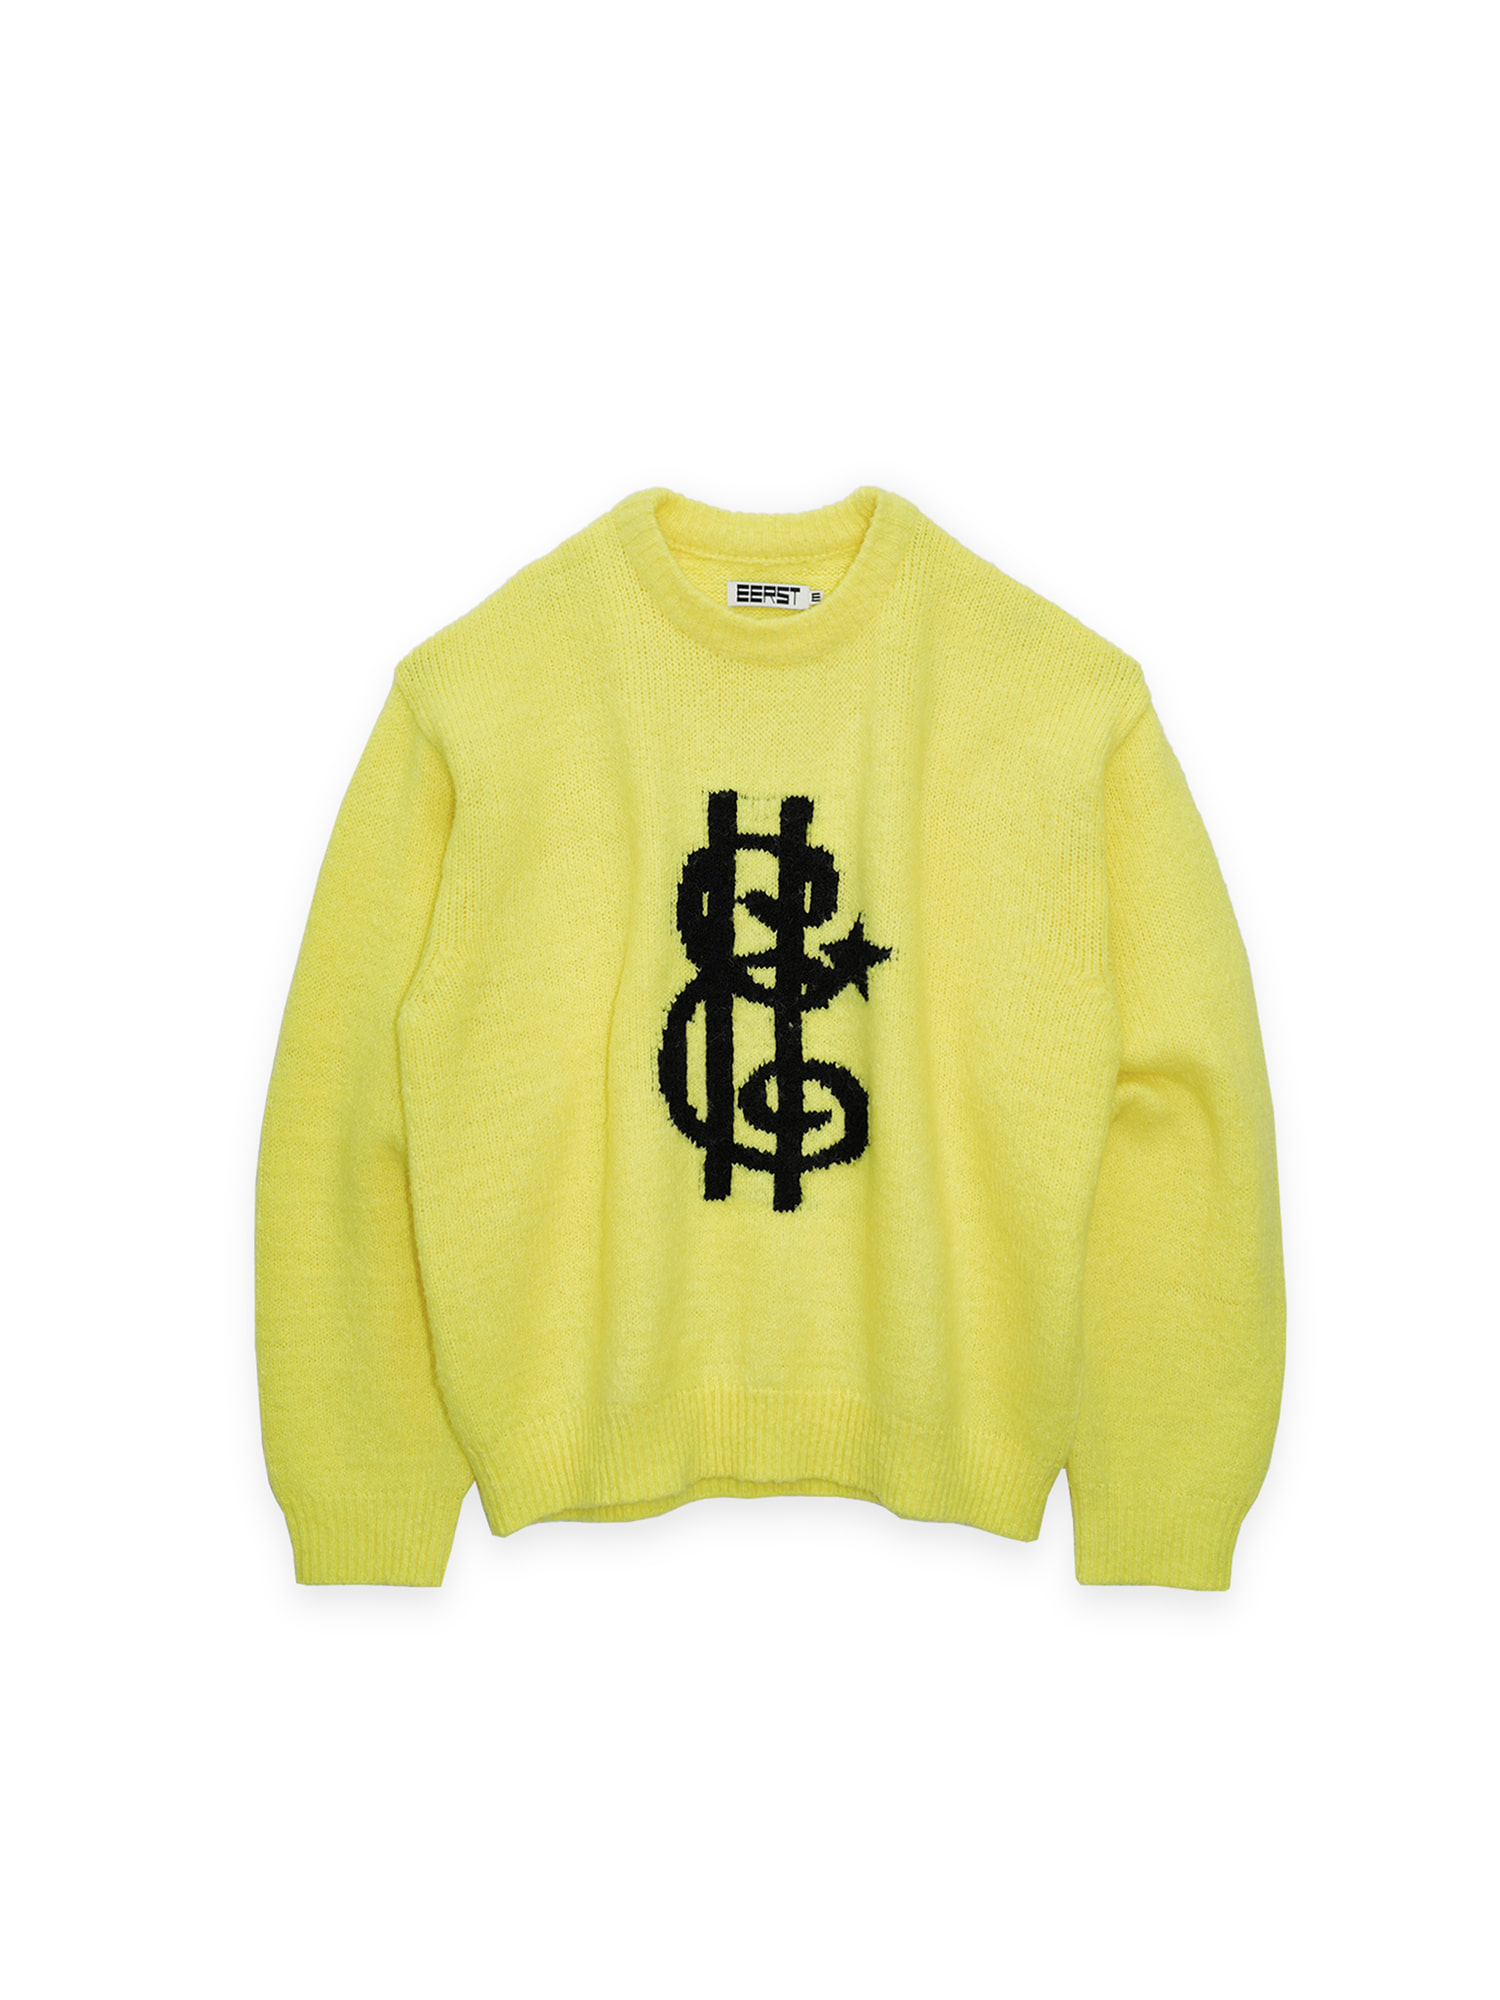 Sans-E Sweater - Lemon Yellow